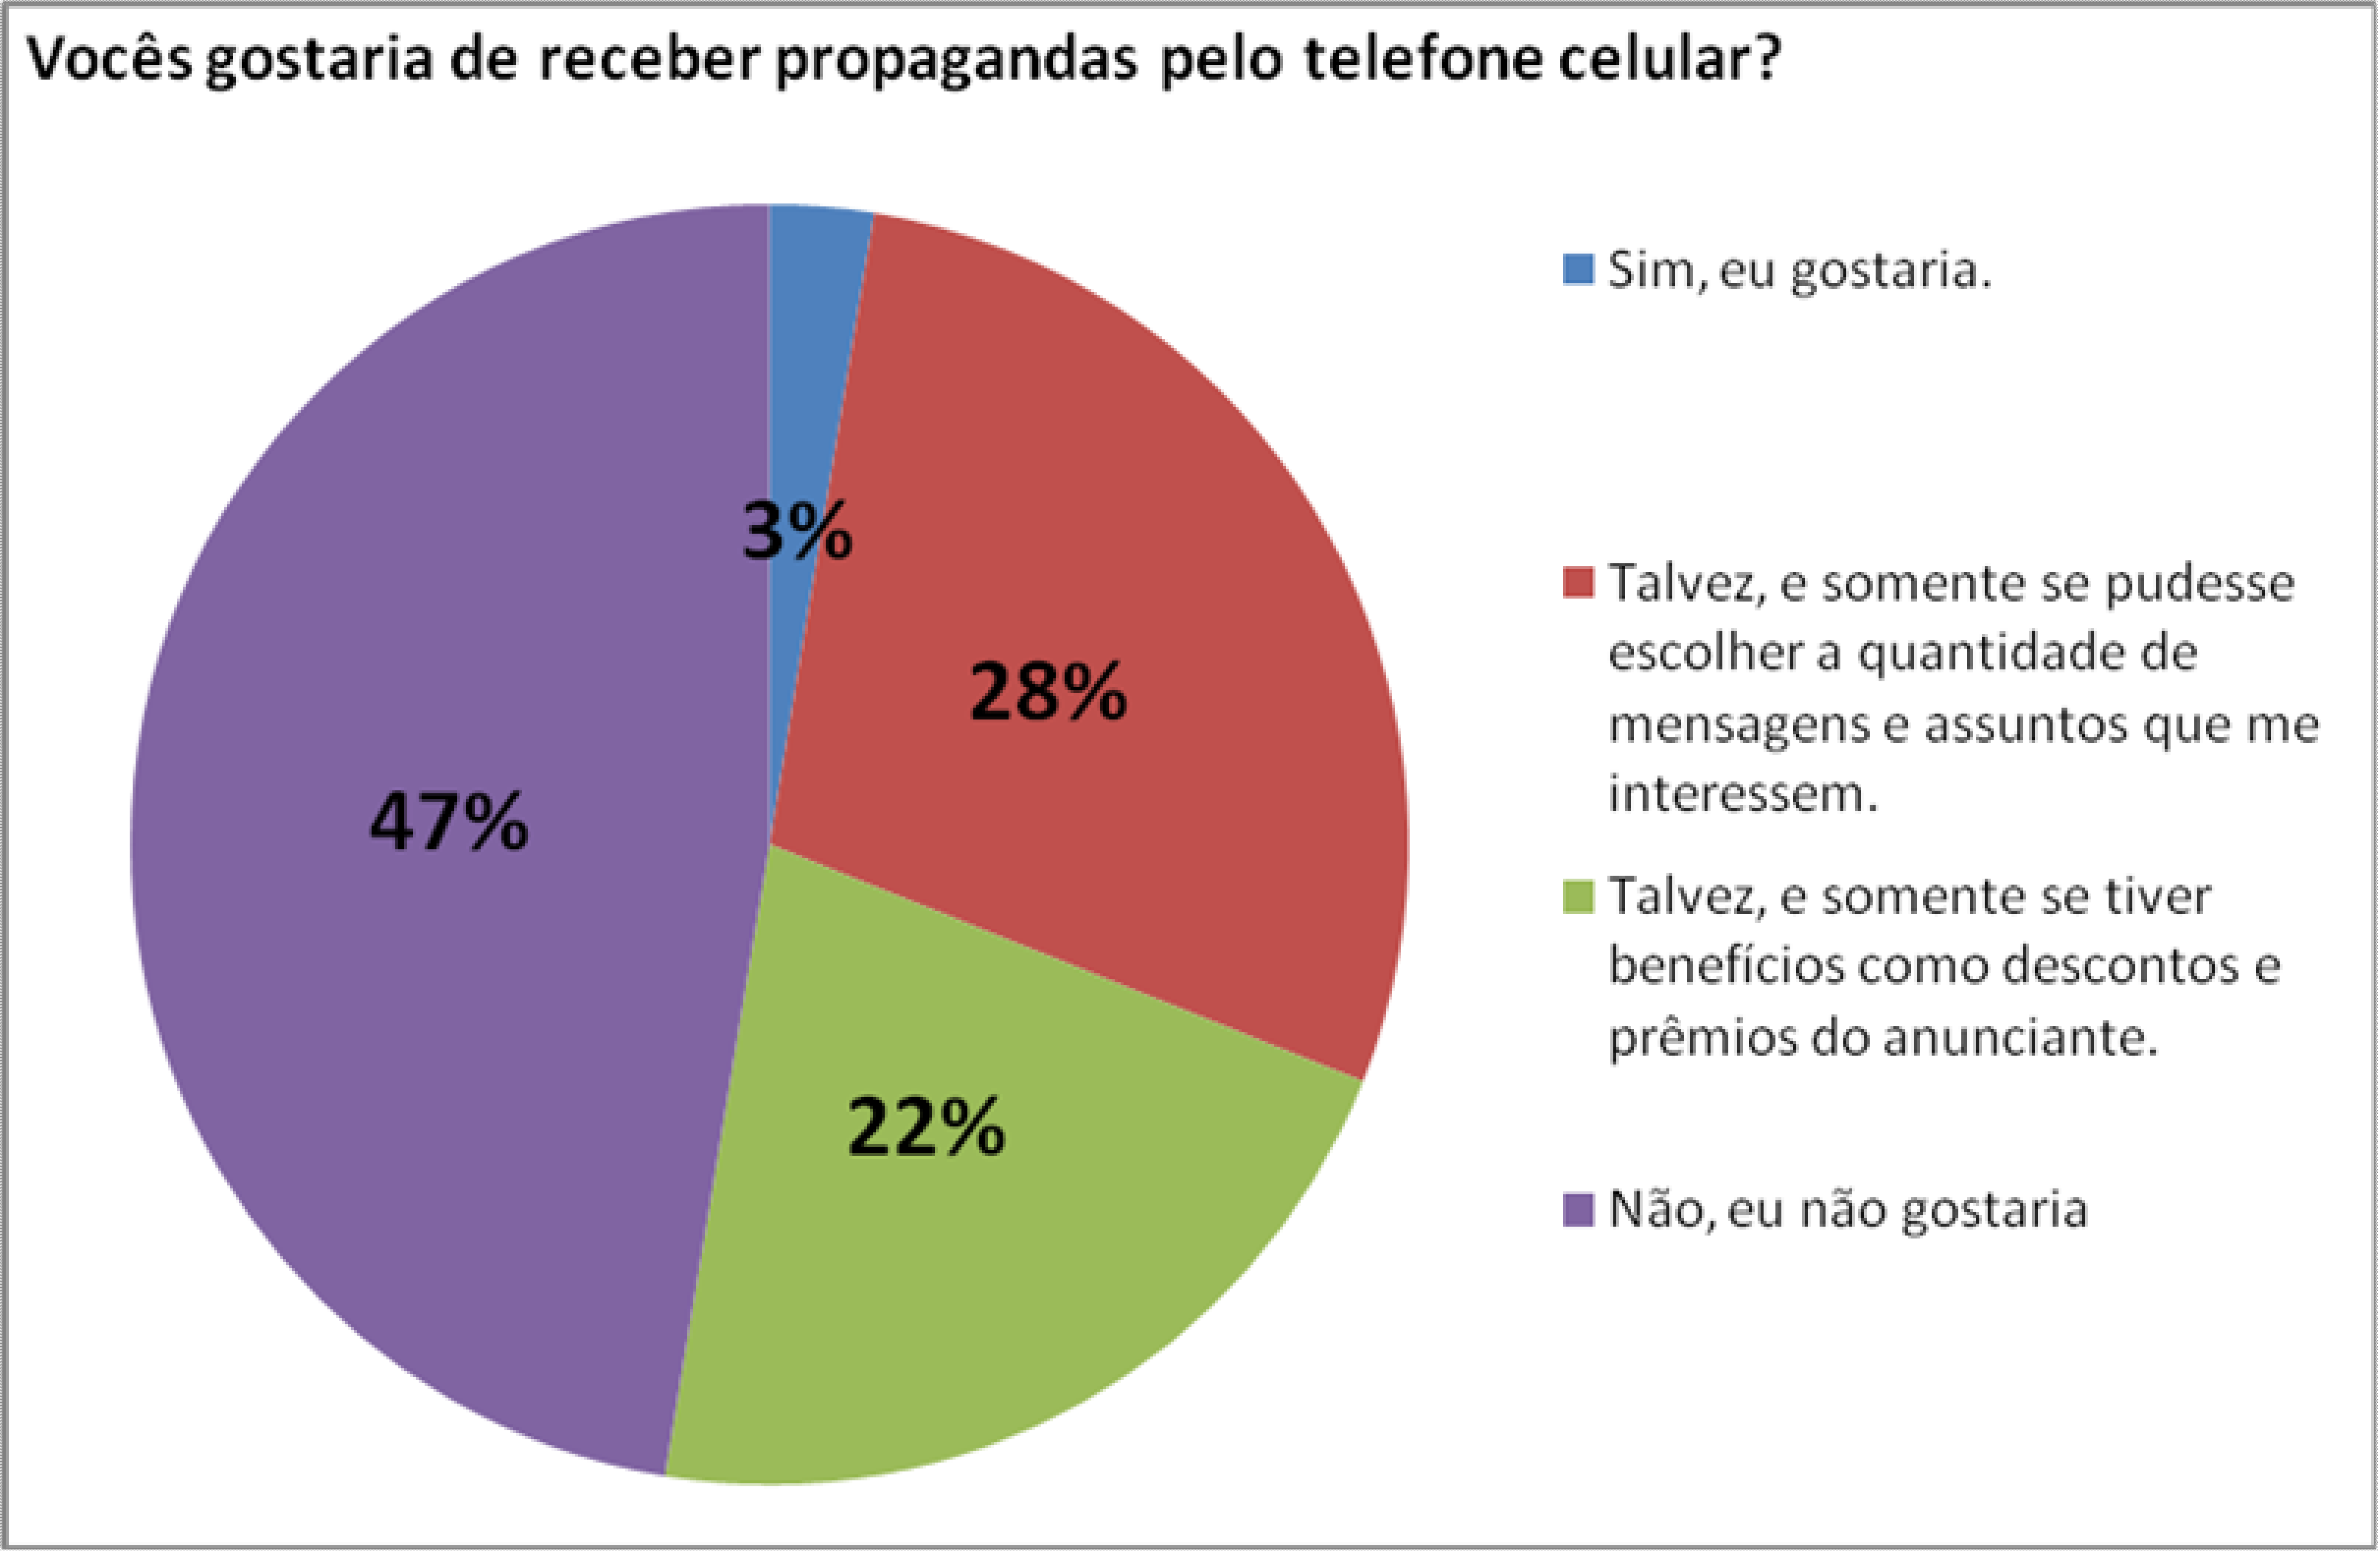 48 Attitude Usage Study, indicou que a tecnologia Bluetooth é considerada de alta importância pelos brasileiros quanto à escolha de seus telefones móveis.